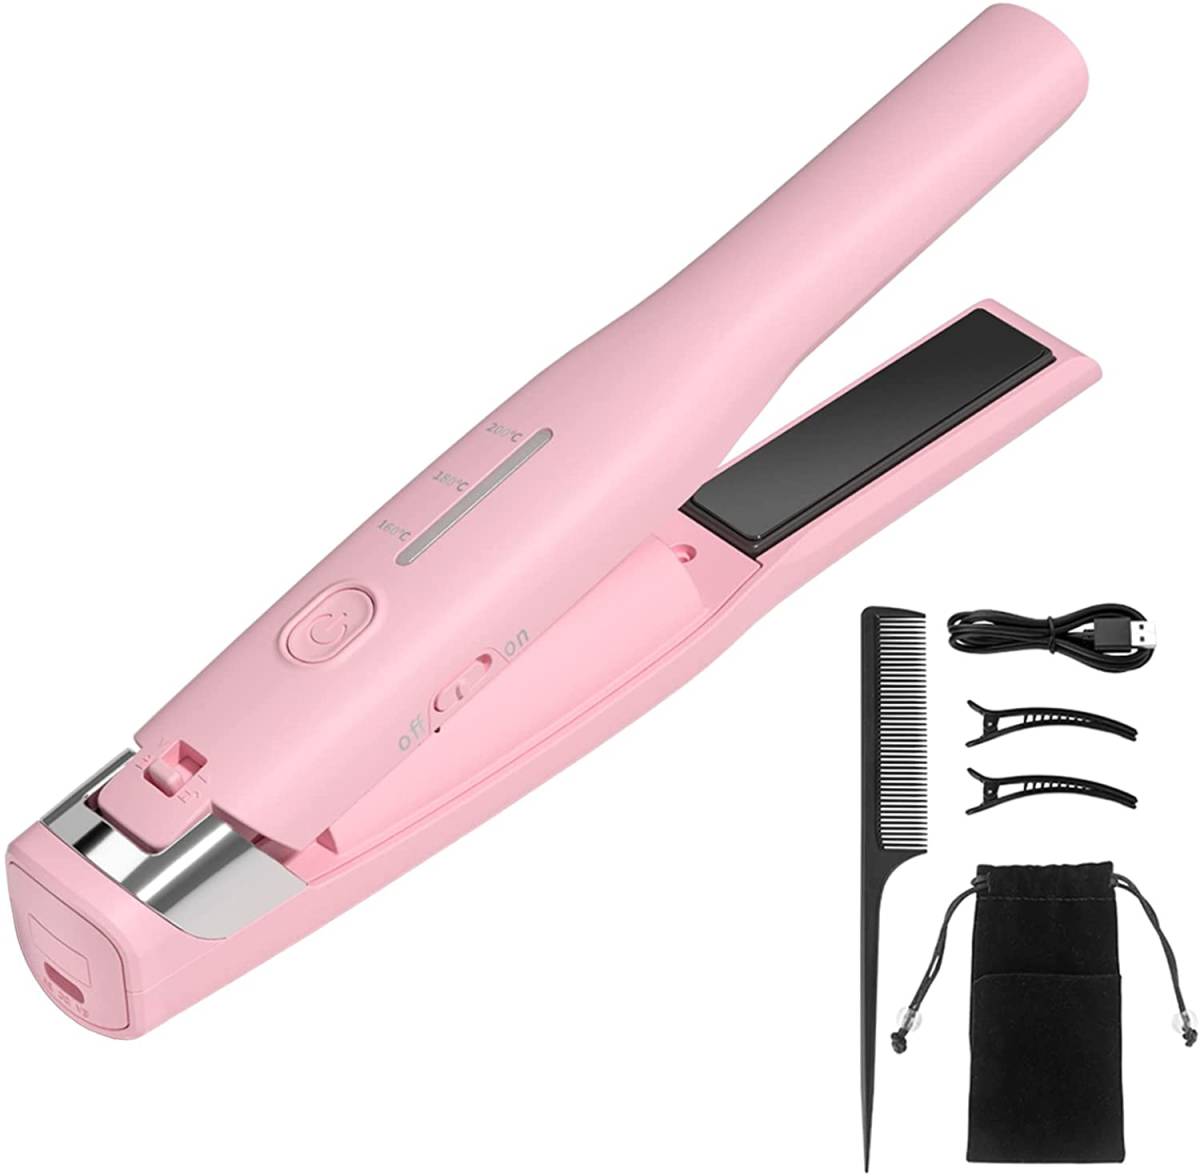 MeryStar ヘアアイロン ストレート コードレス ヘアケア 家電 美容 USB充電式 カール 携帯便利 2WAY 3段階温度調節 男女兼用 (Rose Gold) 